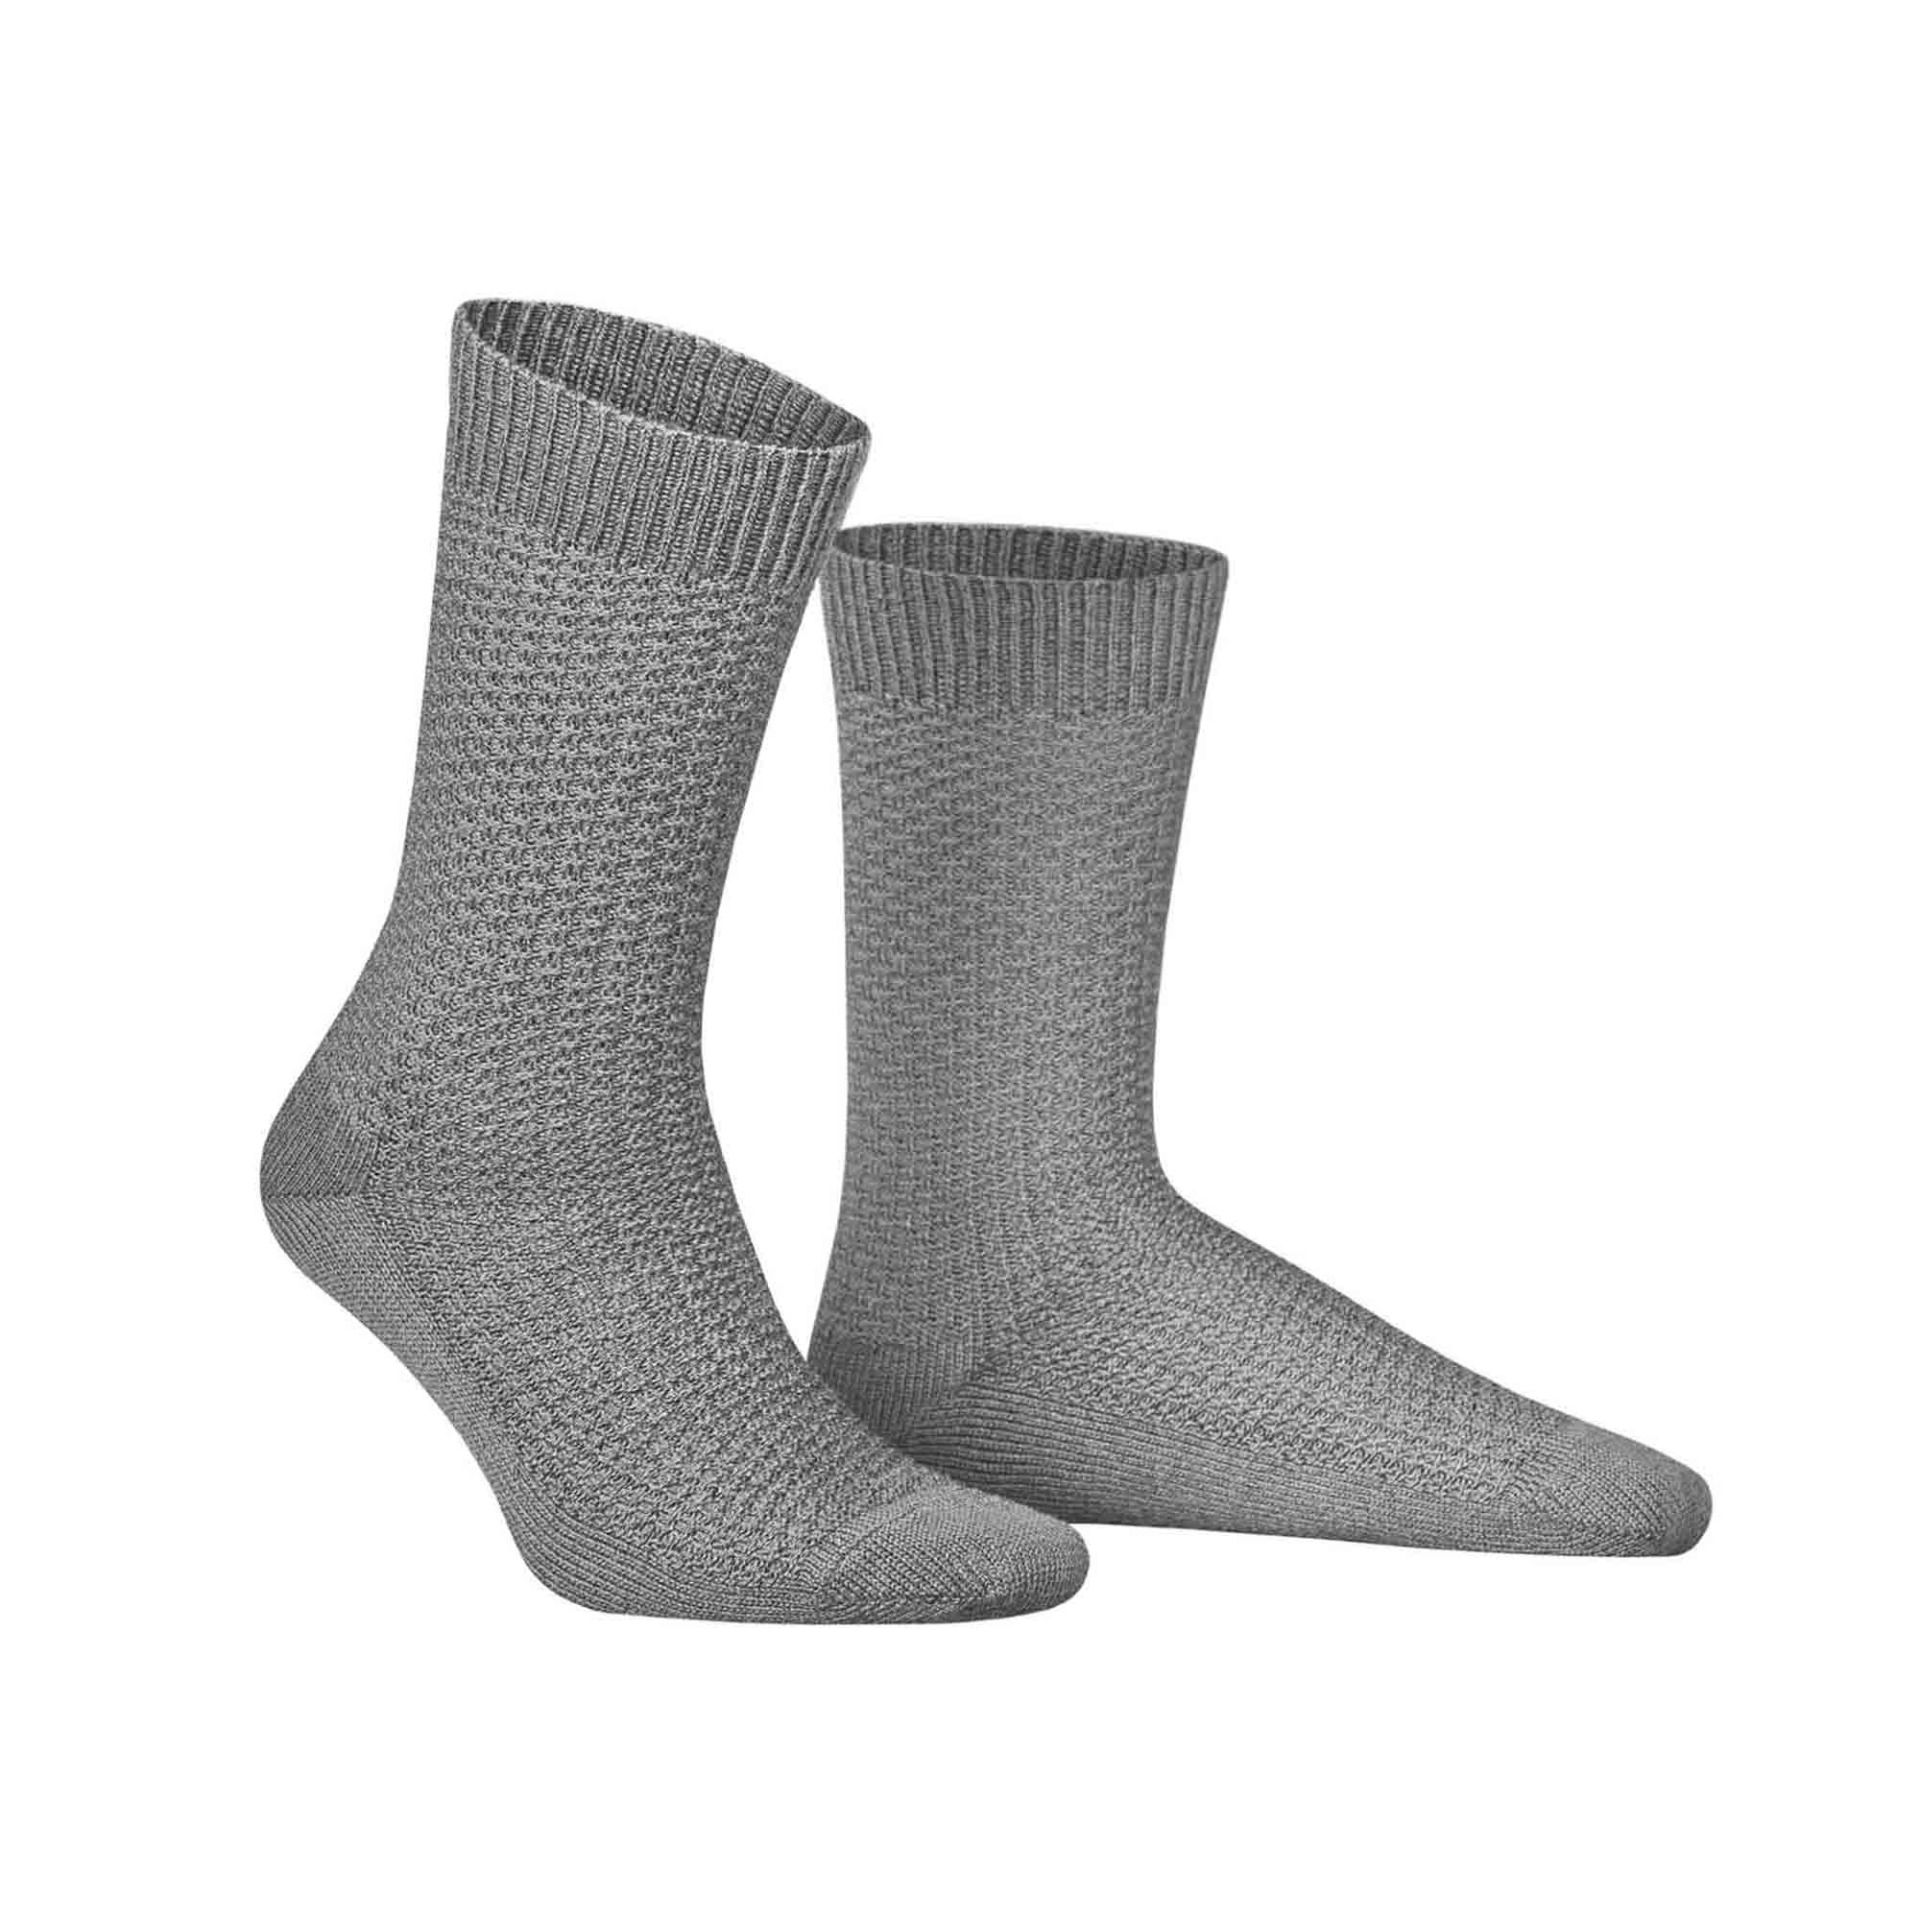 HUDSON Herren PIQUE -  39/42 - Socken mit moderner Pique-Struktur - Silber (Grau)